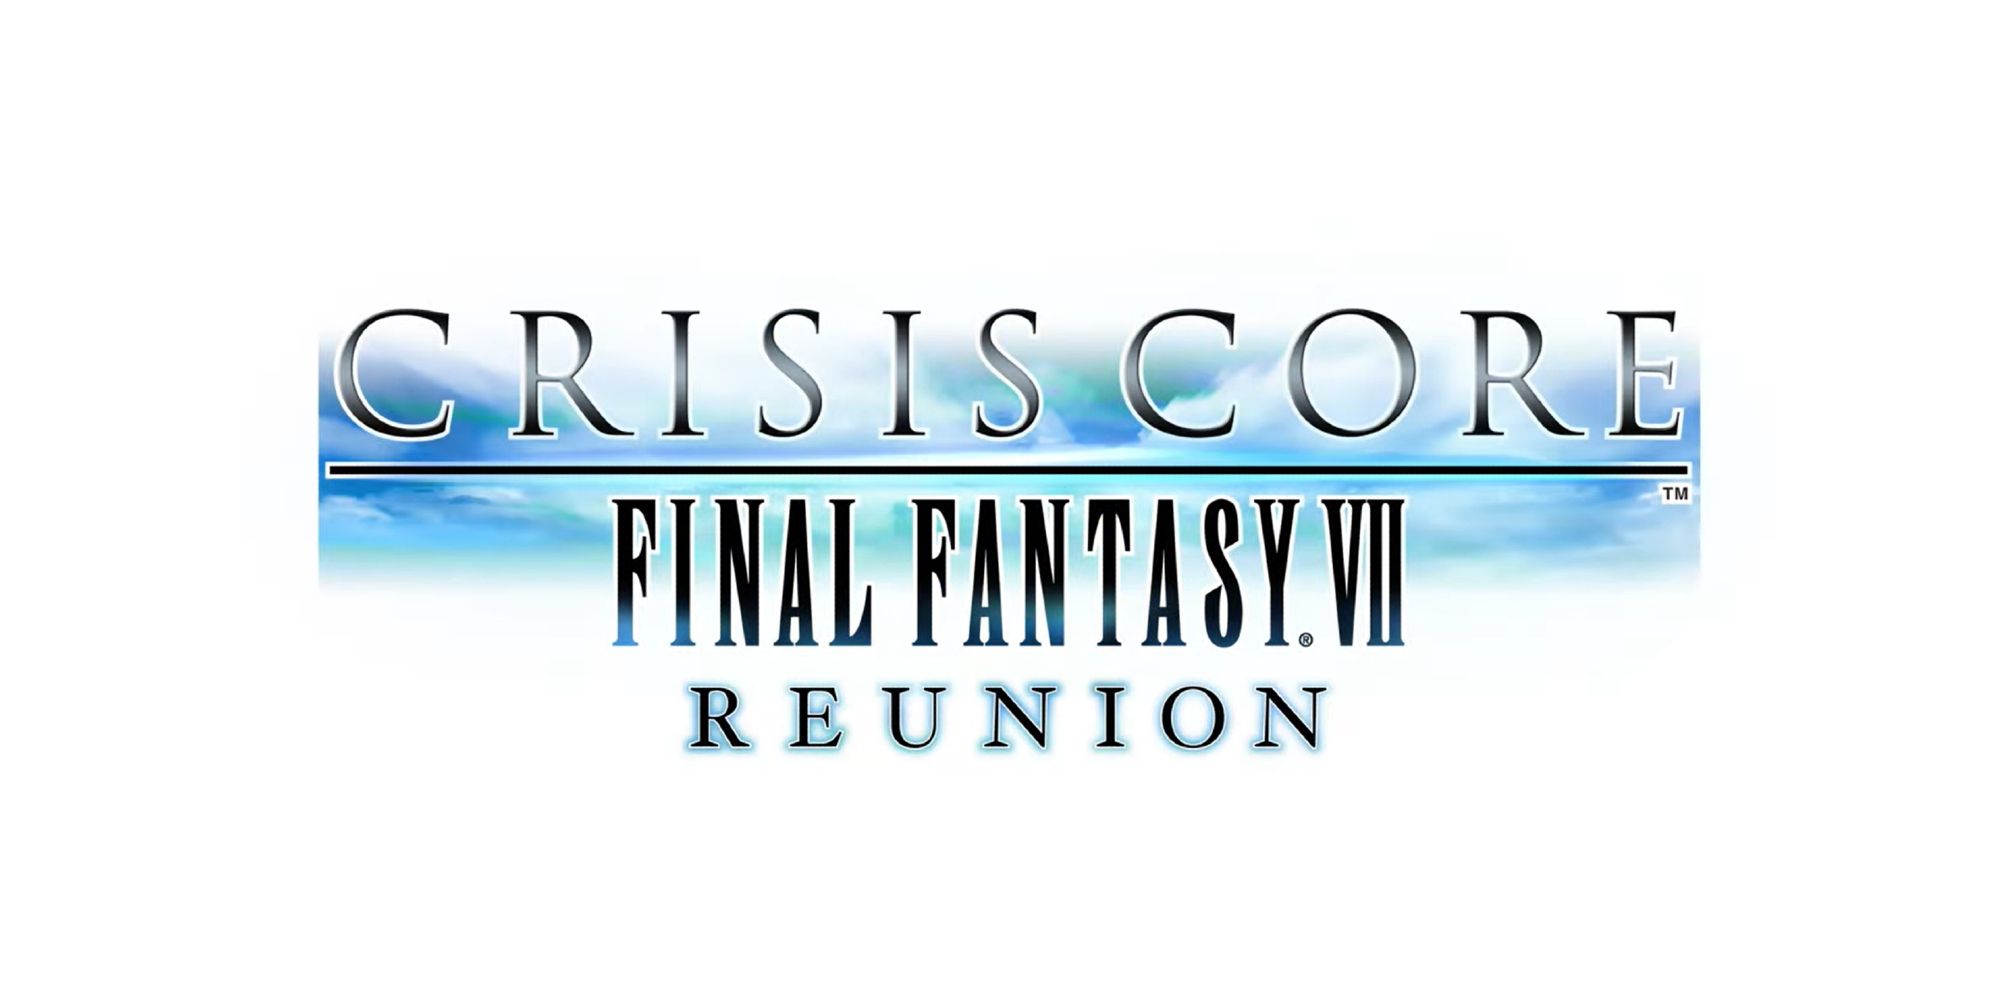 Final Fantasy VII Prequel Crisis Core Getting Remake Treatment